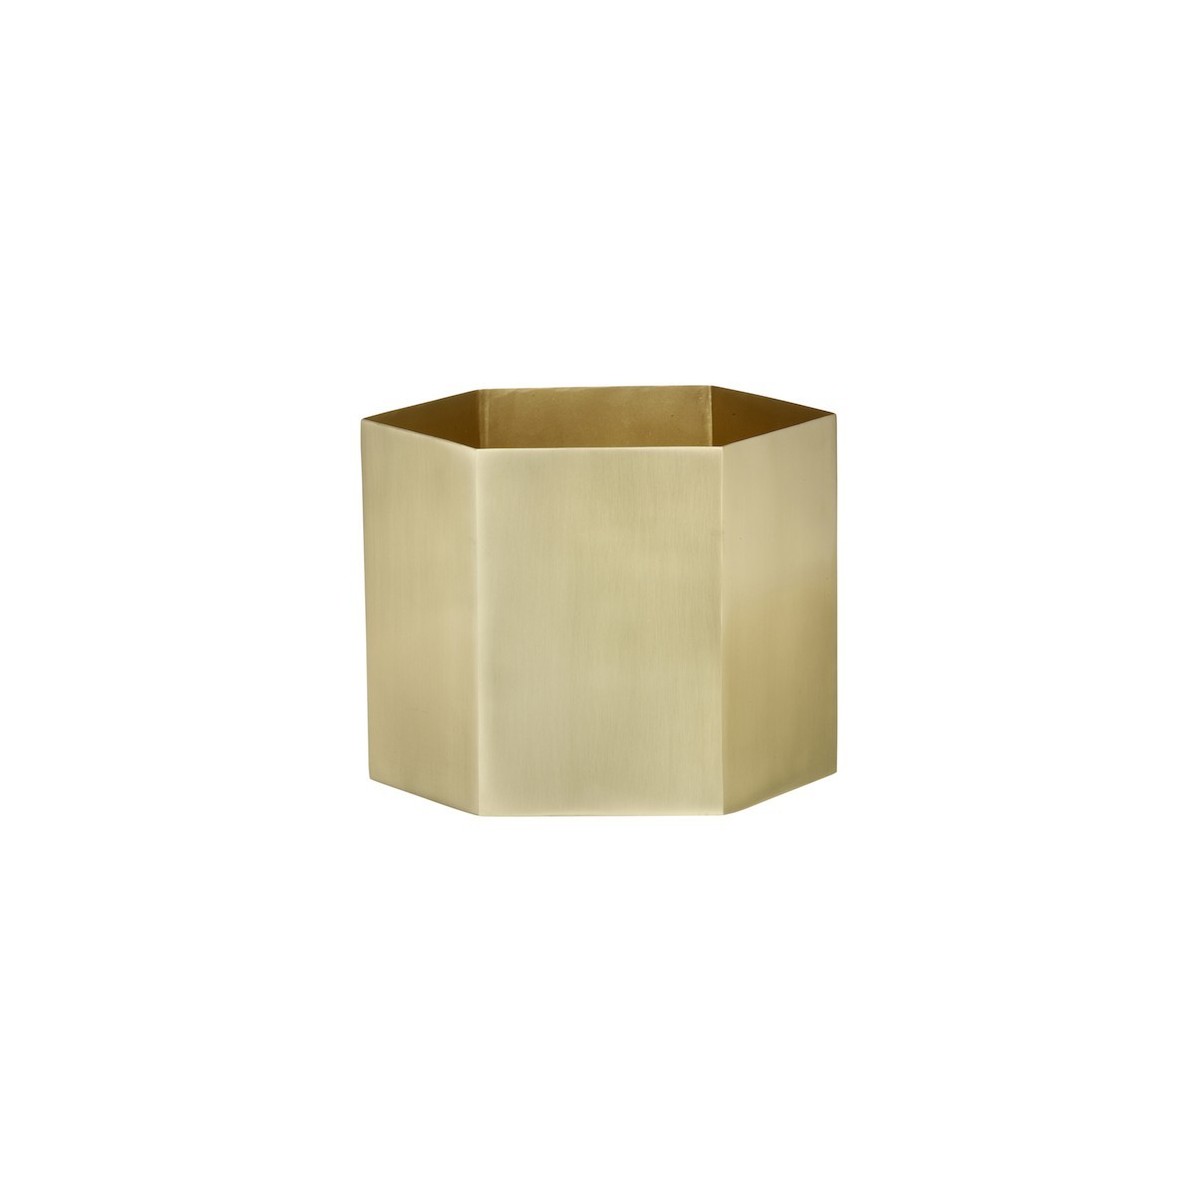 XL - brass - Hexagon pot